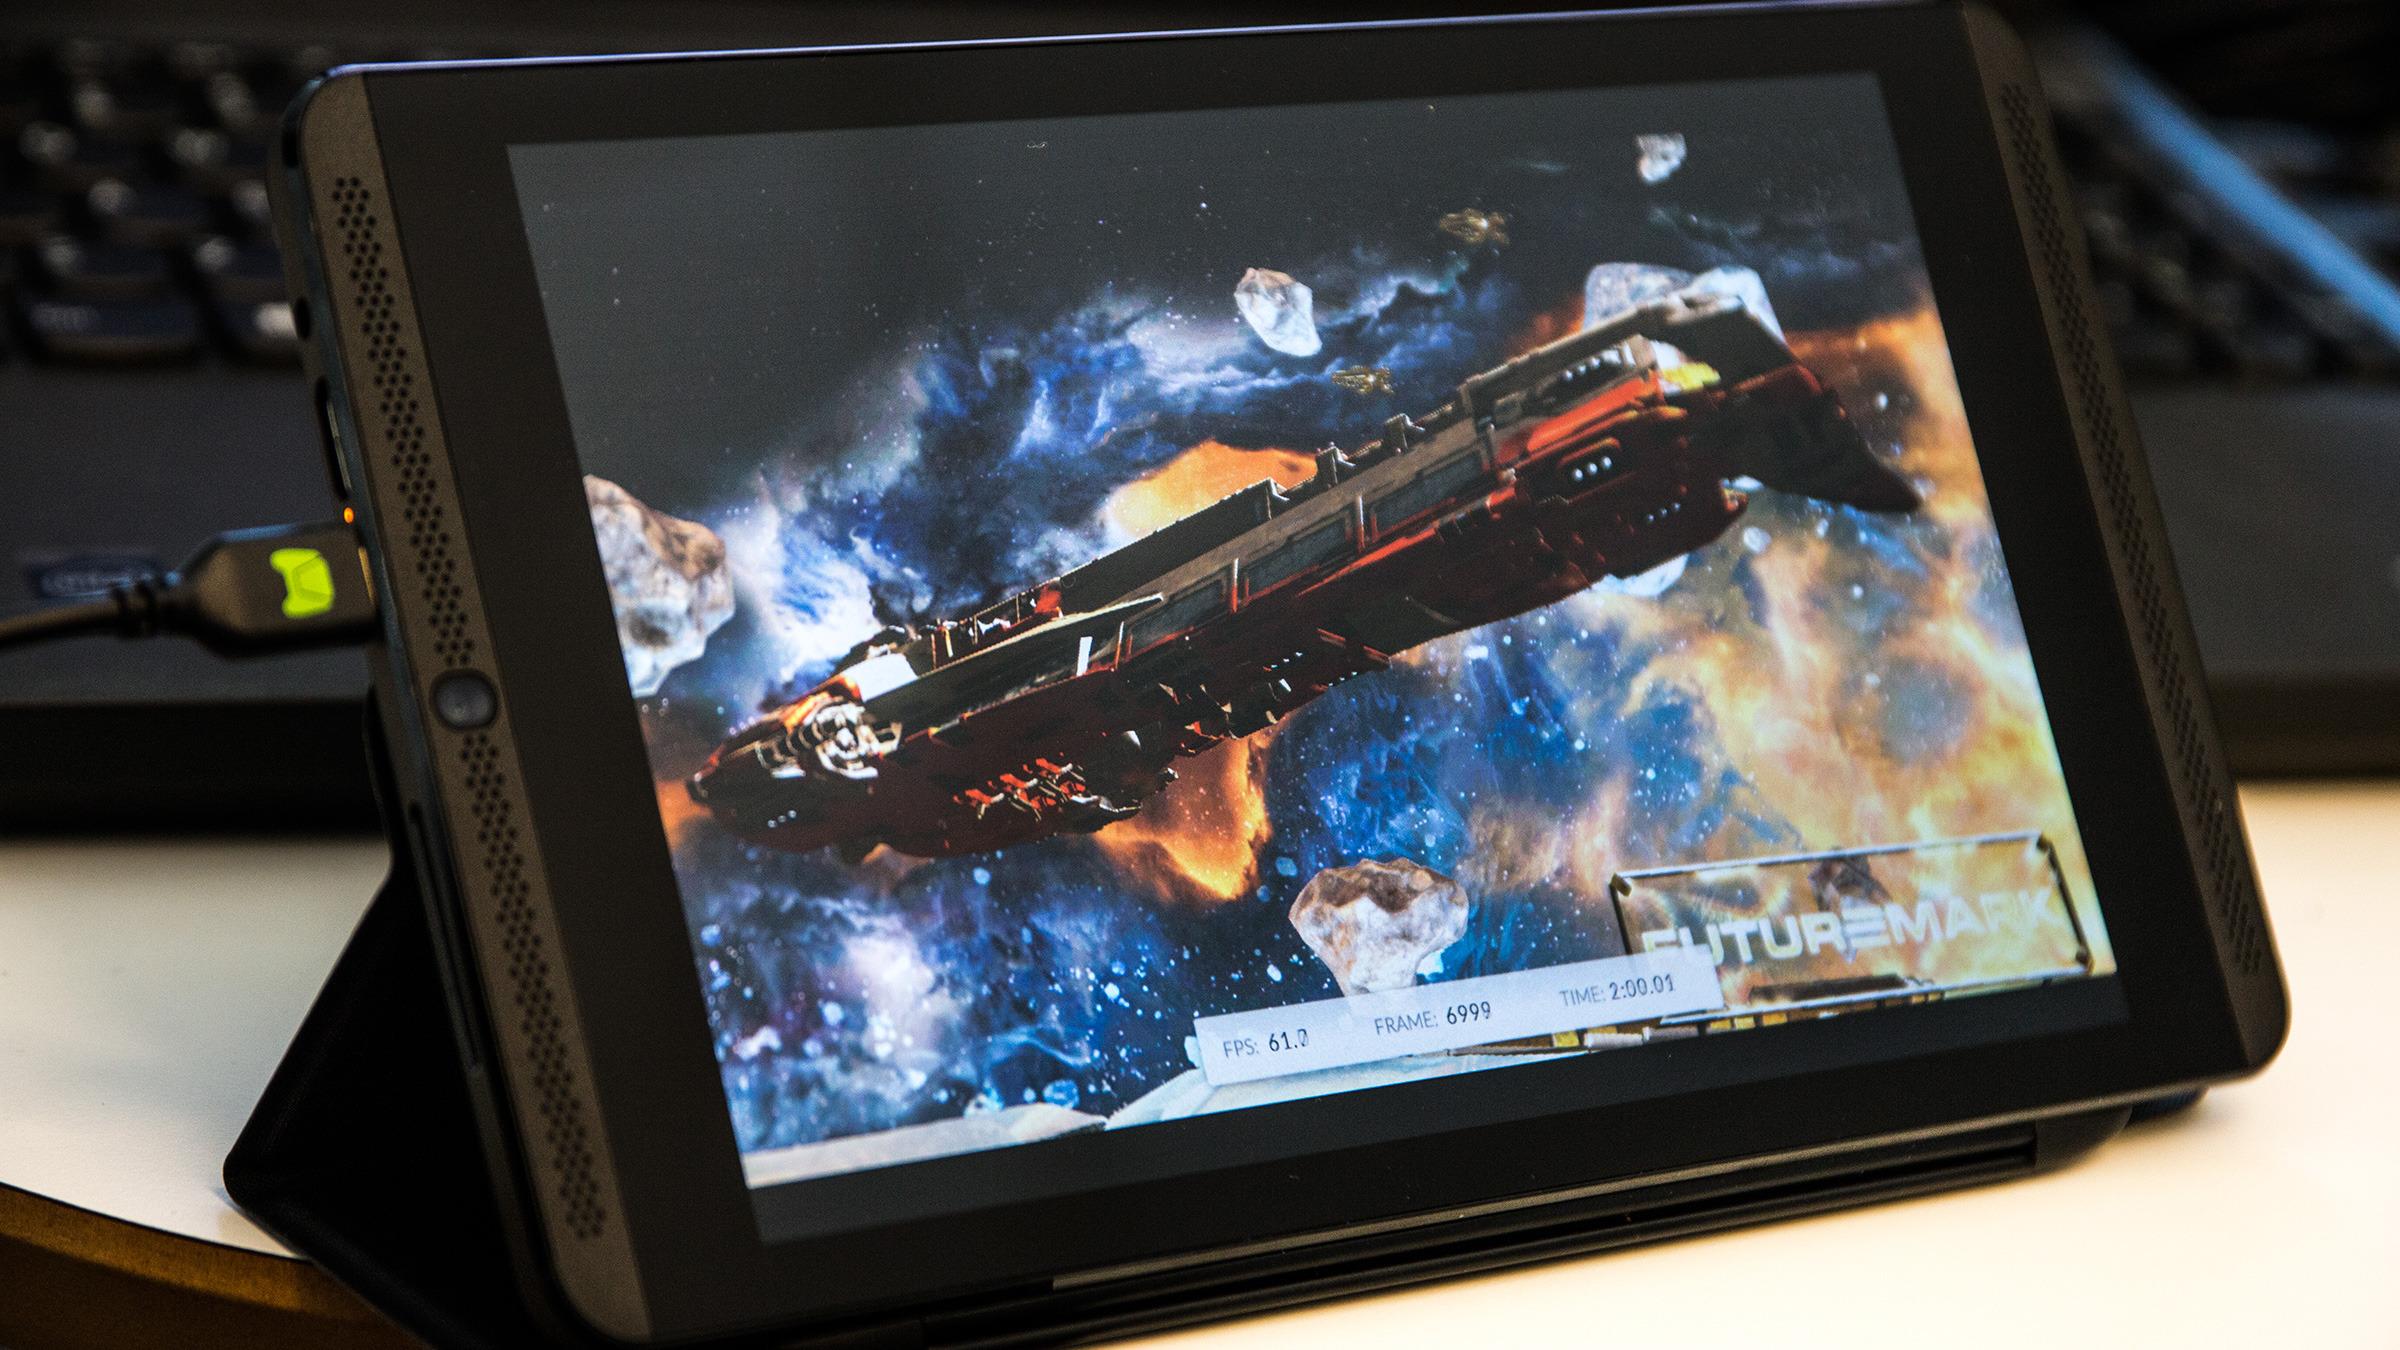 Nvidia spøkte ikke da de fortalte at Shield Tablet kunne kjøre 3D-grafikk bedre enn det meste.Foto: Varg Aamo, Hardware.no